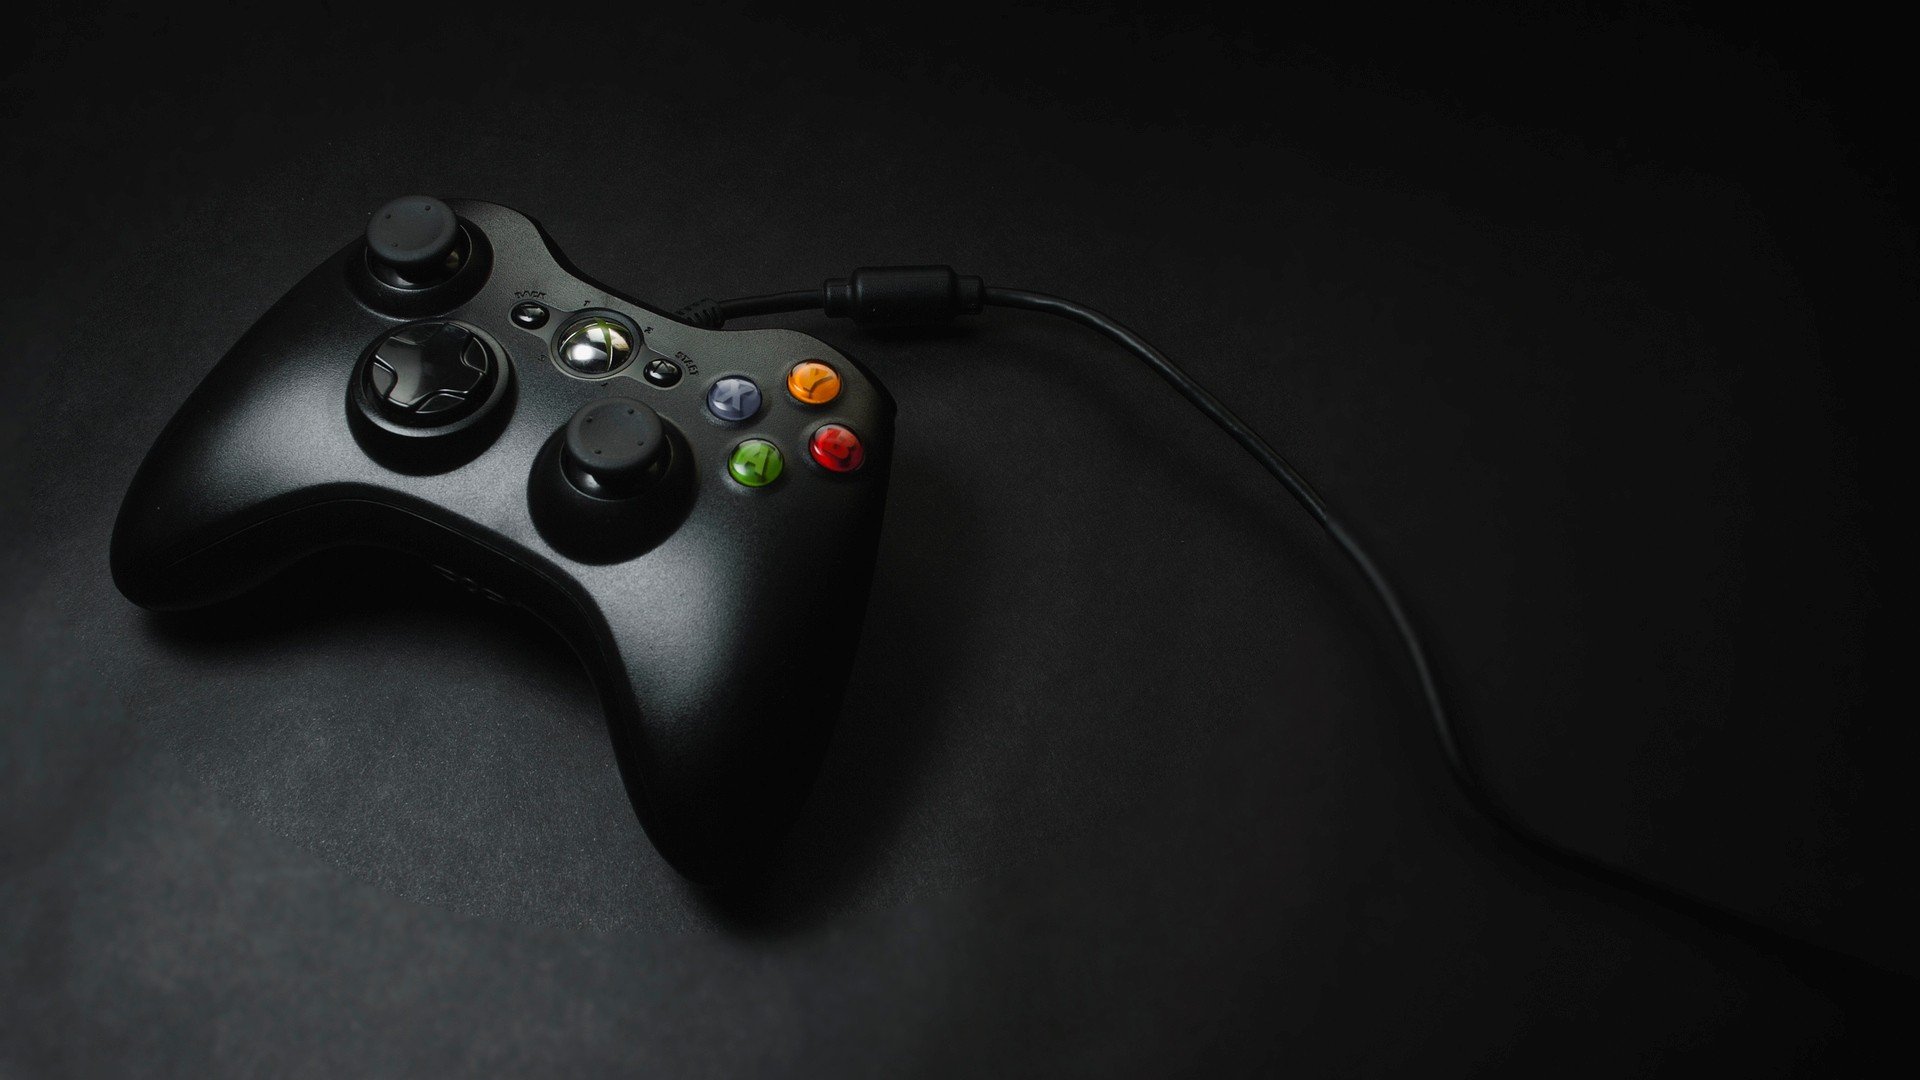 Hình nền Xbox controller trông thật sự đẹp mắt và tinh tế. Chúng tôi đã tuyển chọn những bức ảnh tuyệt vời nhất để bạn có thể thực sự tận hưởng trải nghiệm chơi game tuyệt vời nhất trên Xbox của mình.